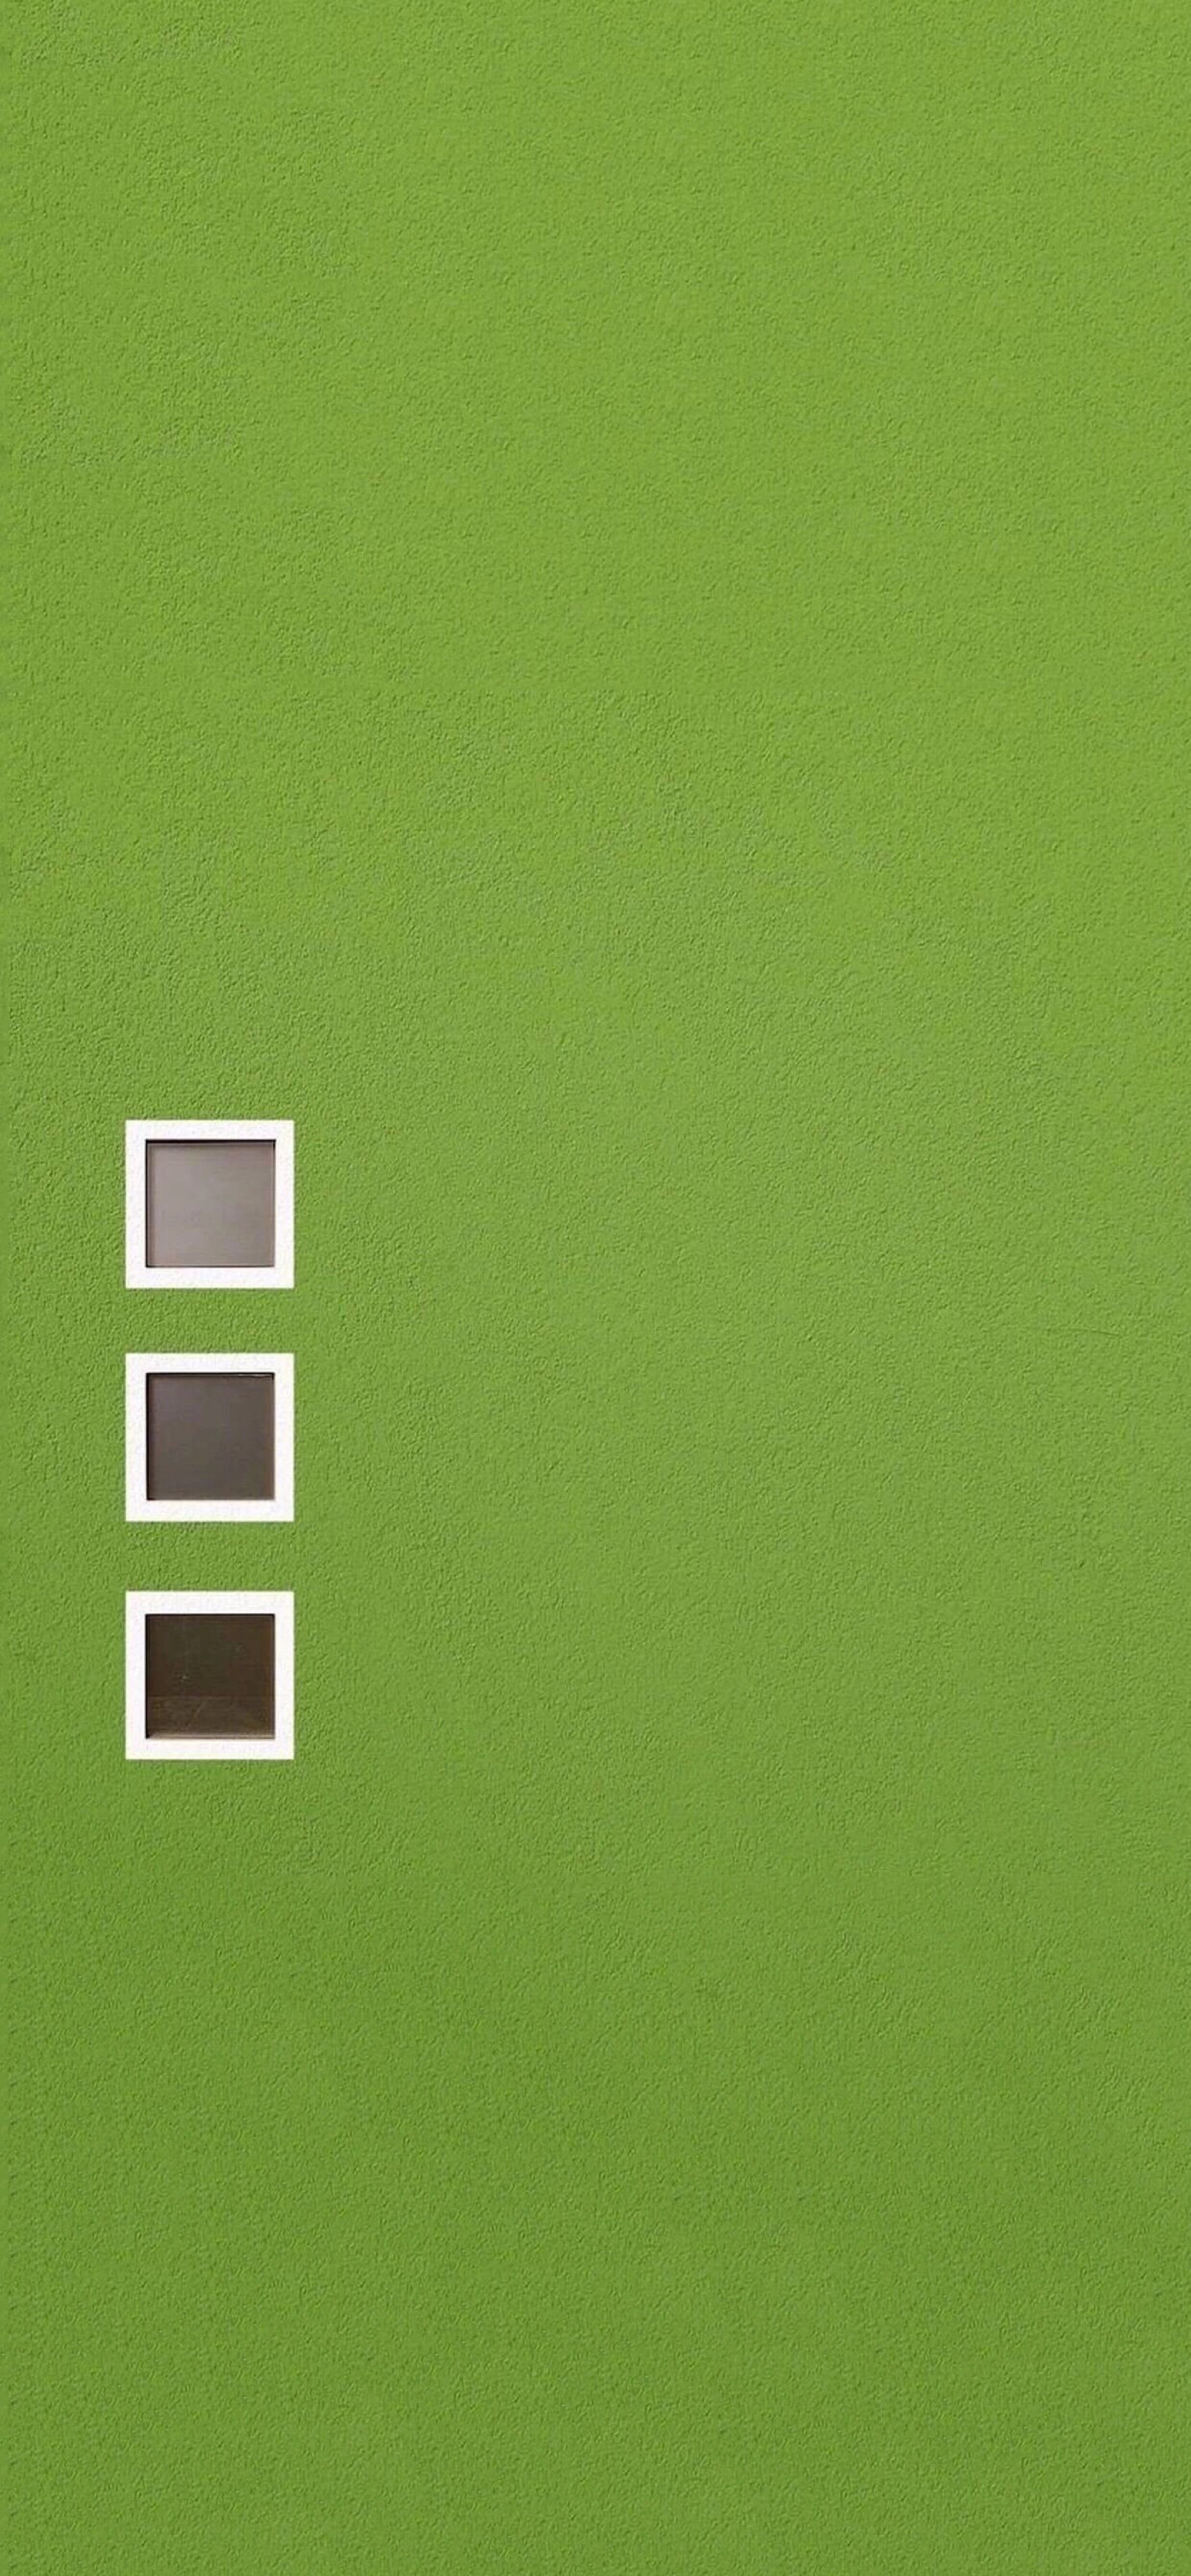 关注  简约 壁纸 手机壁纸 绿色壁纸 纯色壁纸 评论 收藏